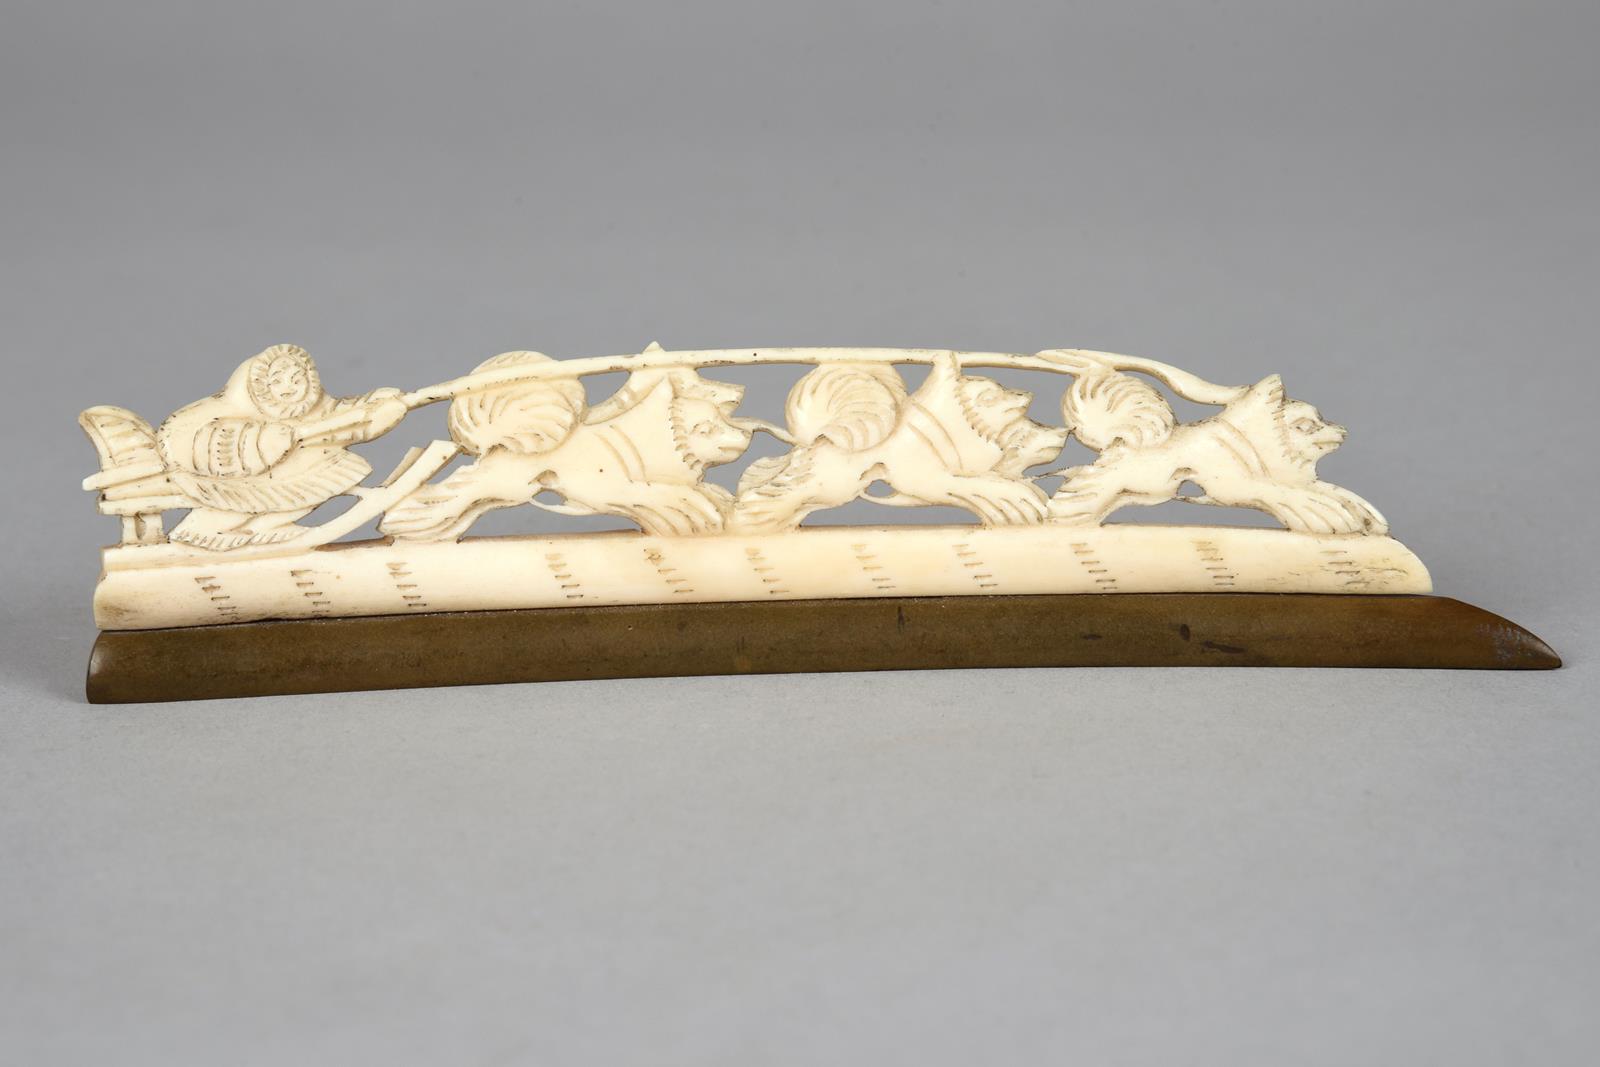 λAn Inuit carved sleigh group walrus ivory, with a figure and five dogs, on a patinated baleen, 16.